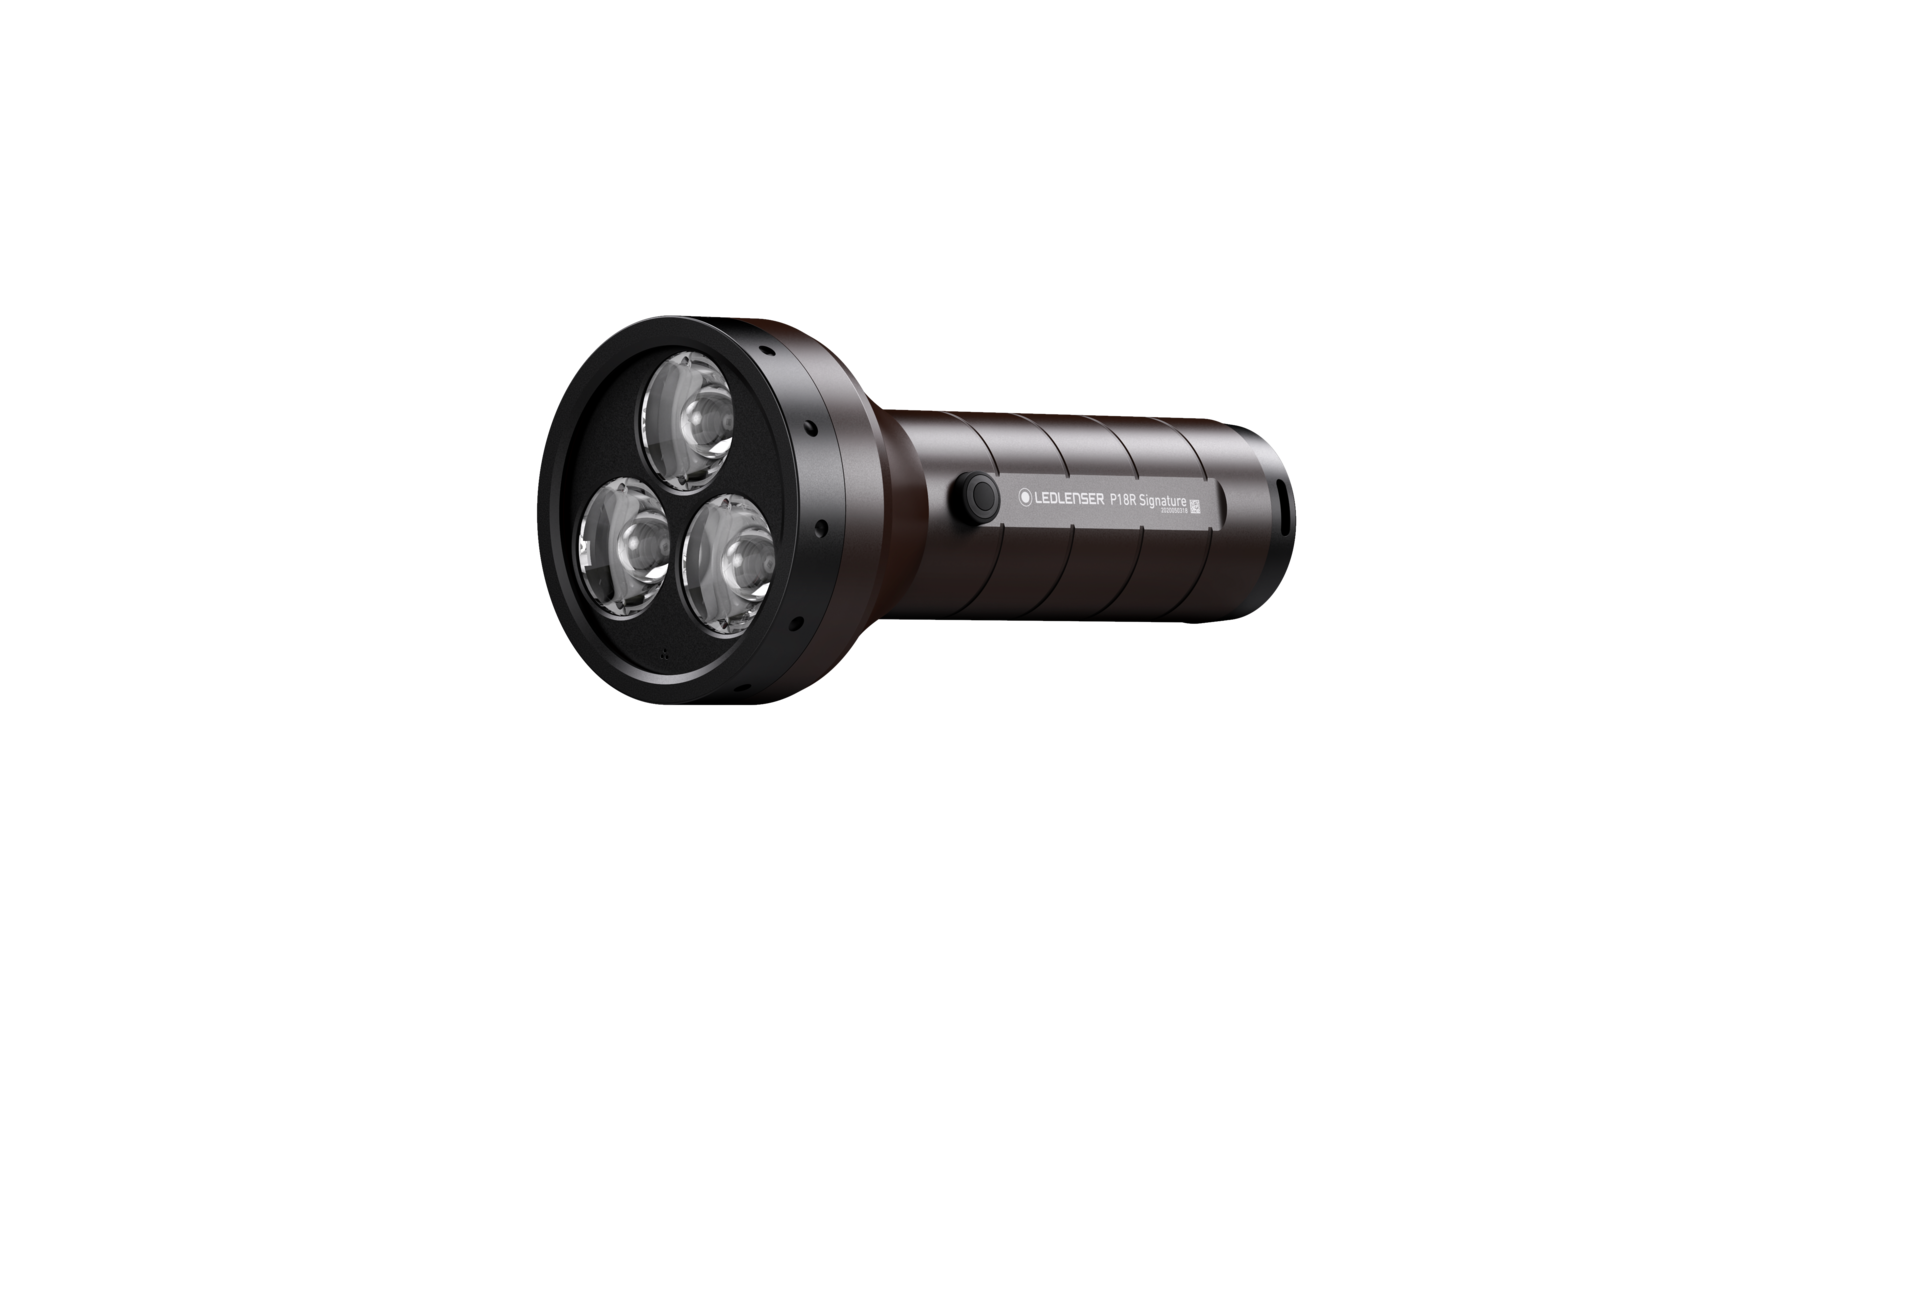 P18R Signature: Premium flashlight with 4,500 lumens